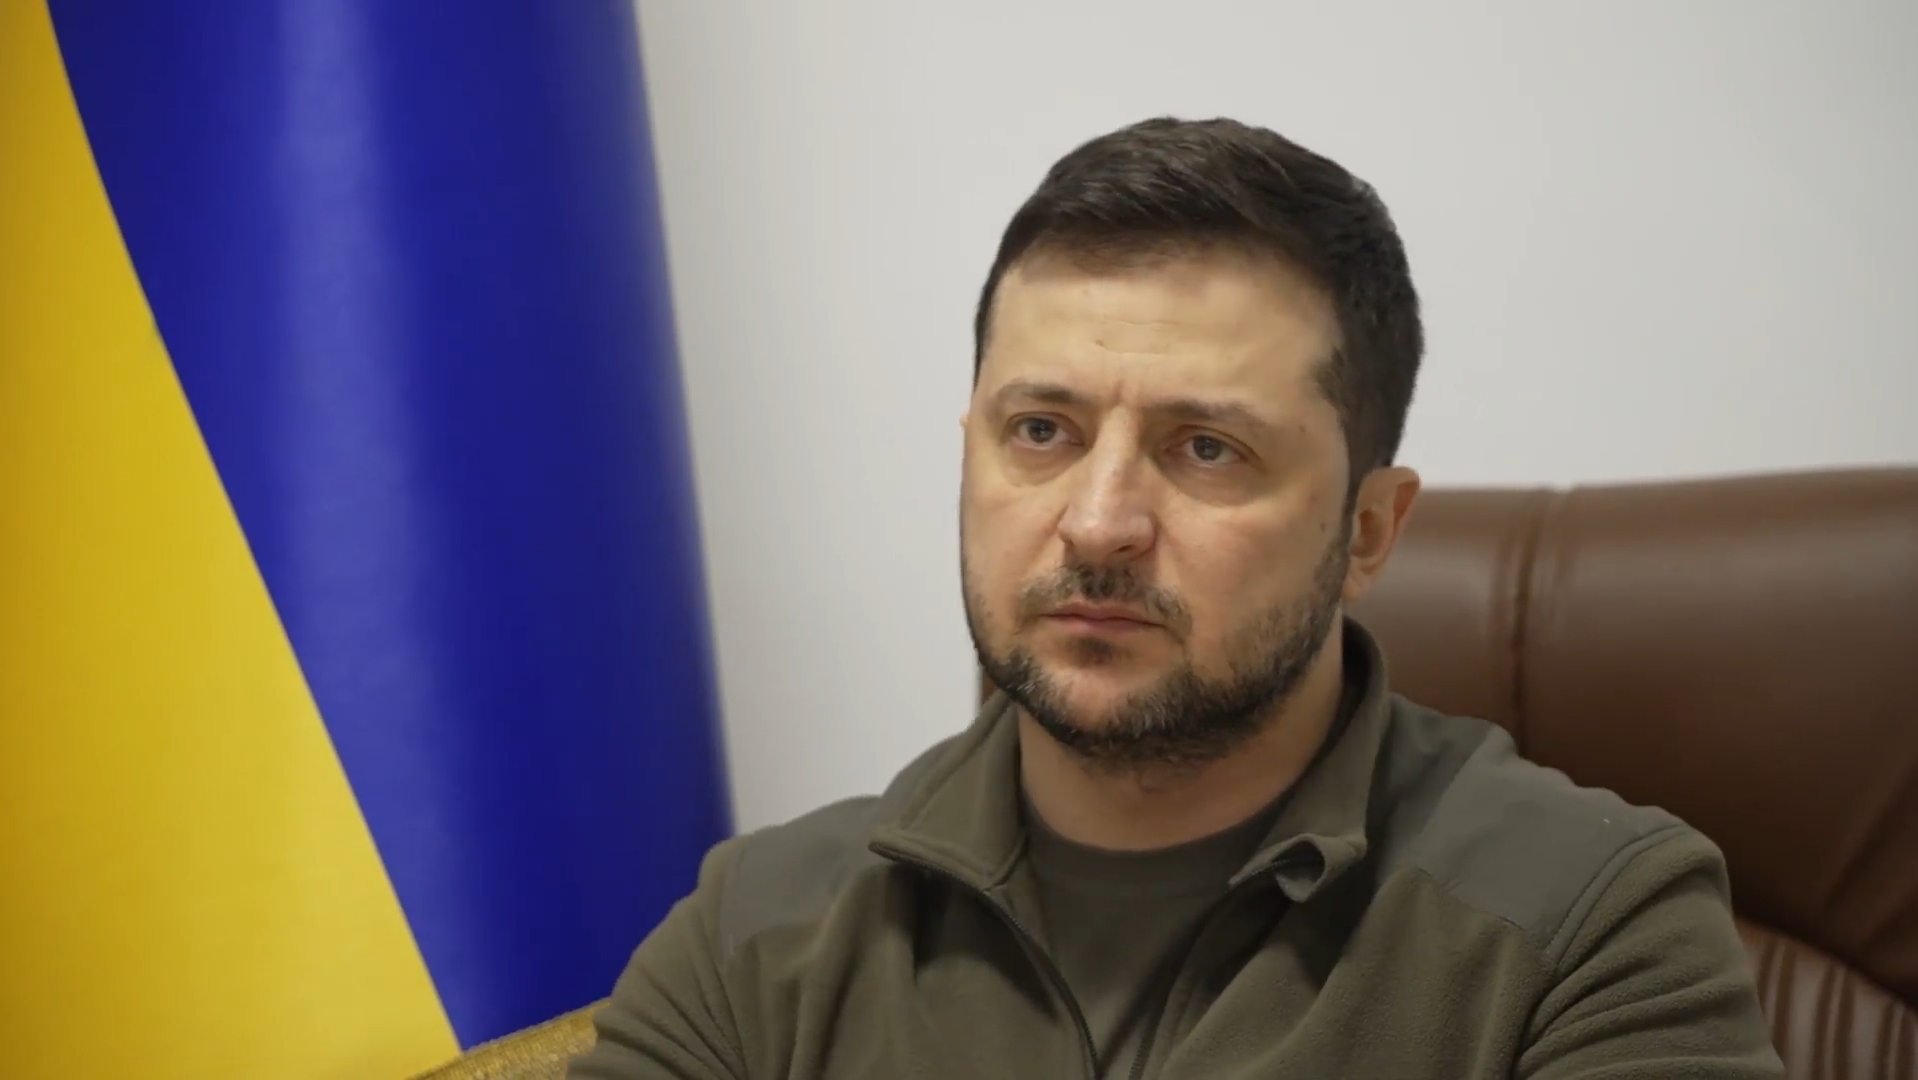 Prezydent Ukrainy Wołodymyr Zełenski ostrzega, że tegoroczne żniwa na Ukrainie są zagrożone. Jak napisał w mediach społecznościowych, mogą być nawet dwukrotnie mniejsze niż w zeszłym roku.